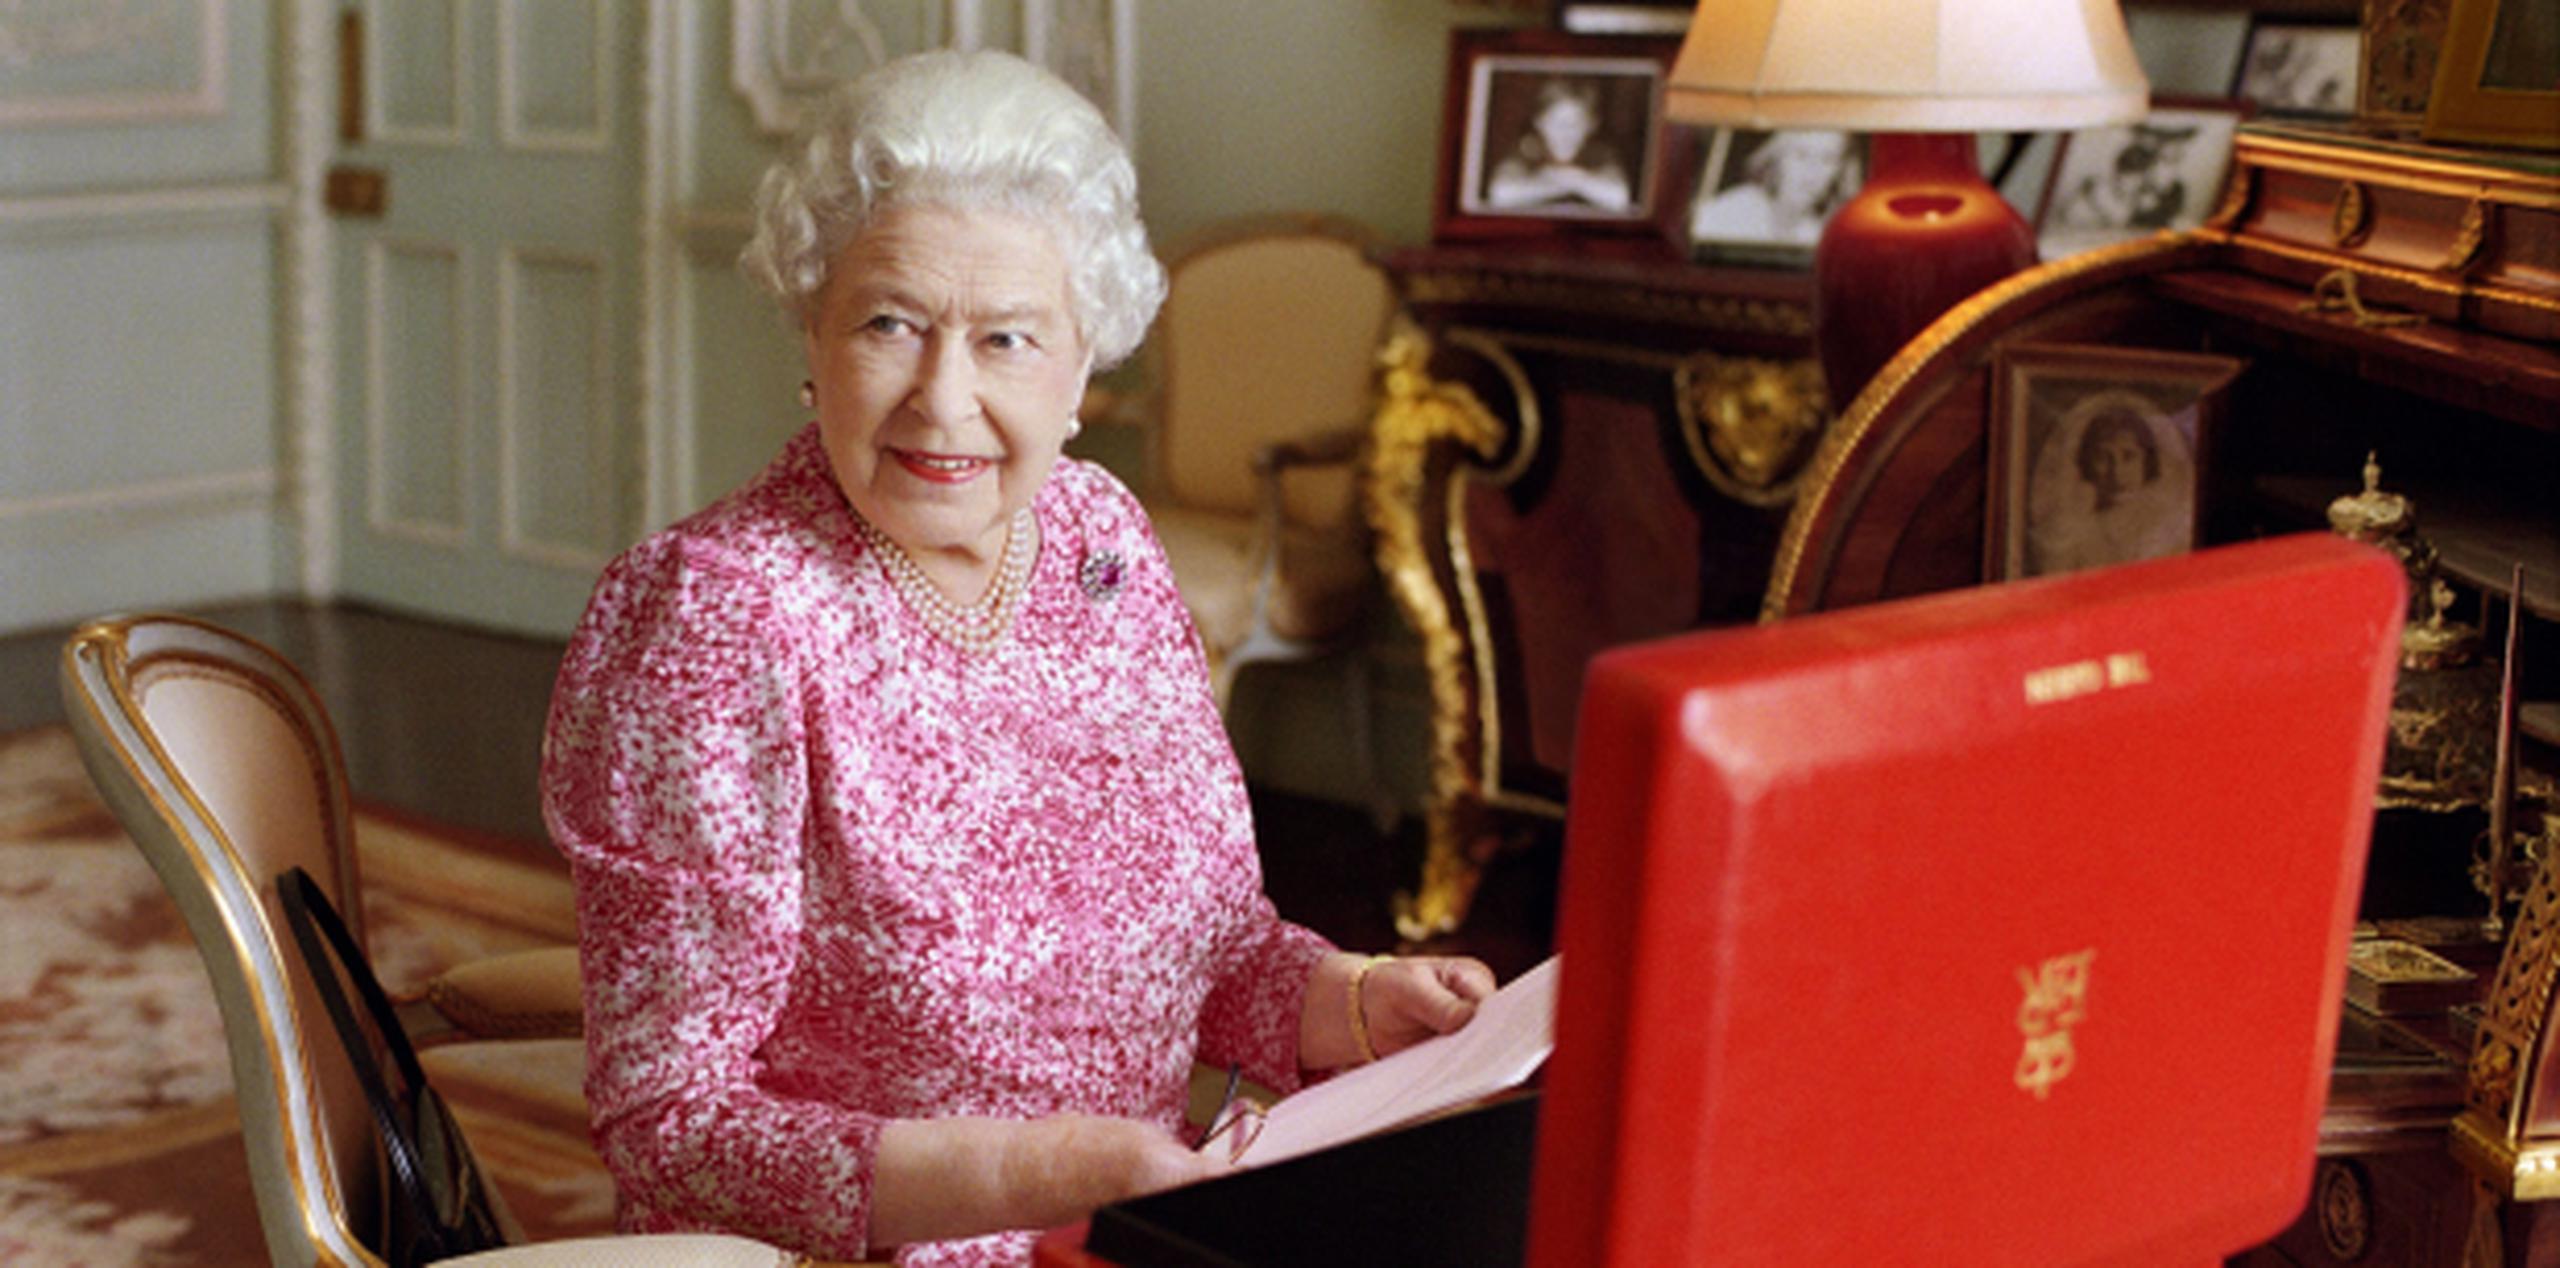 El palacio de Buckingham cedió esta foto reciente de isabel II en su despacho, con la maleta roja en la que recibe documentos importantes. (EFE/Mary McCartney)